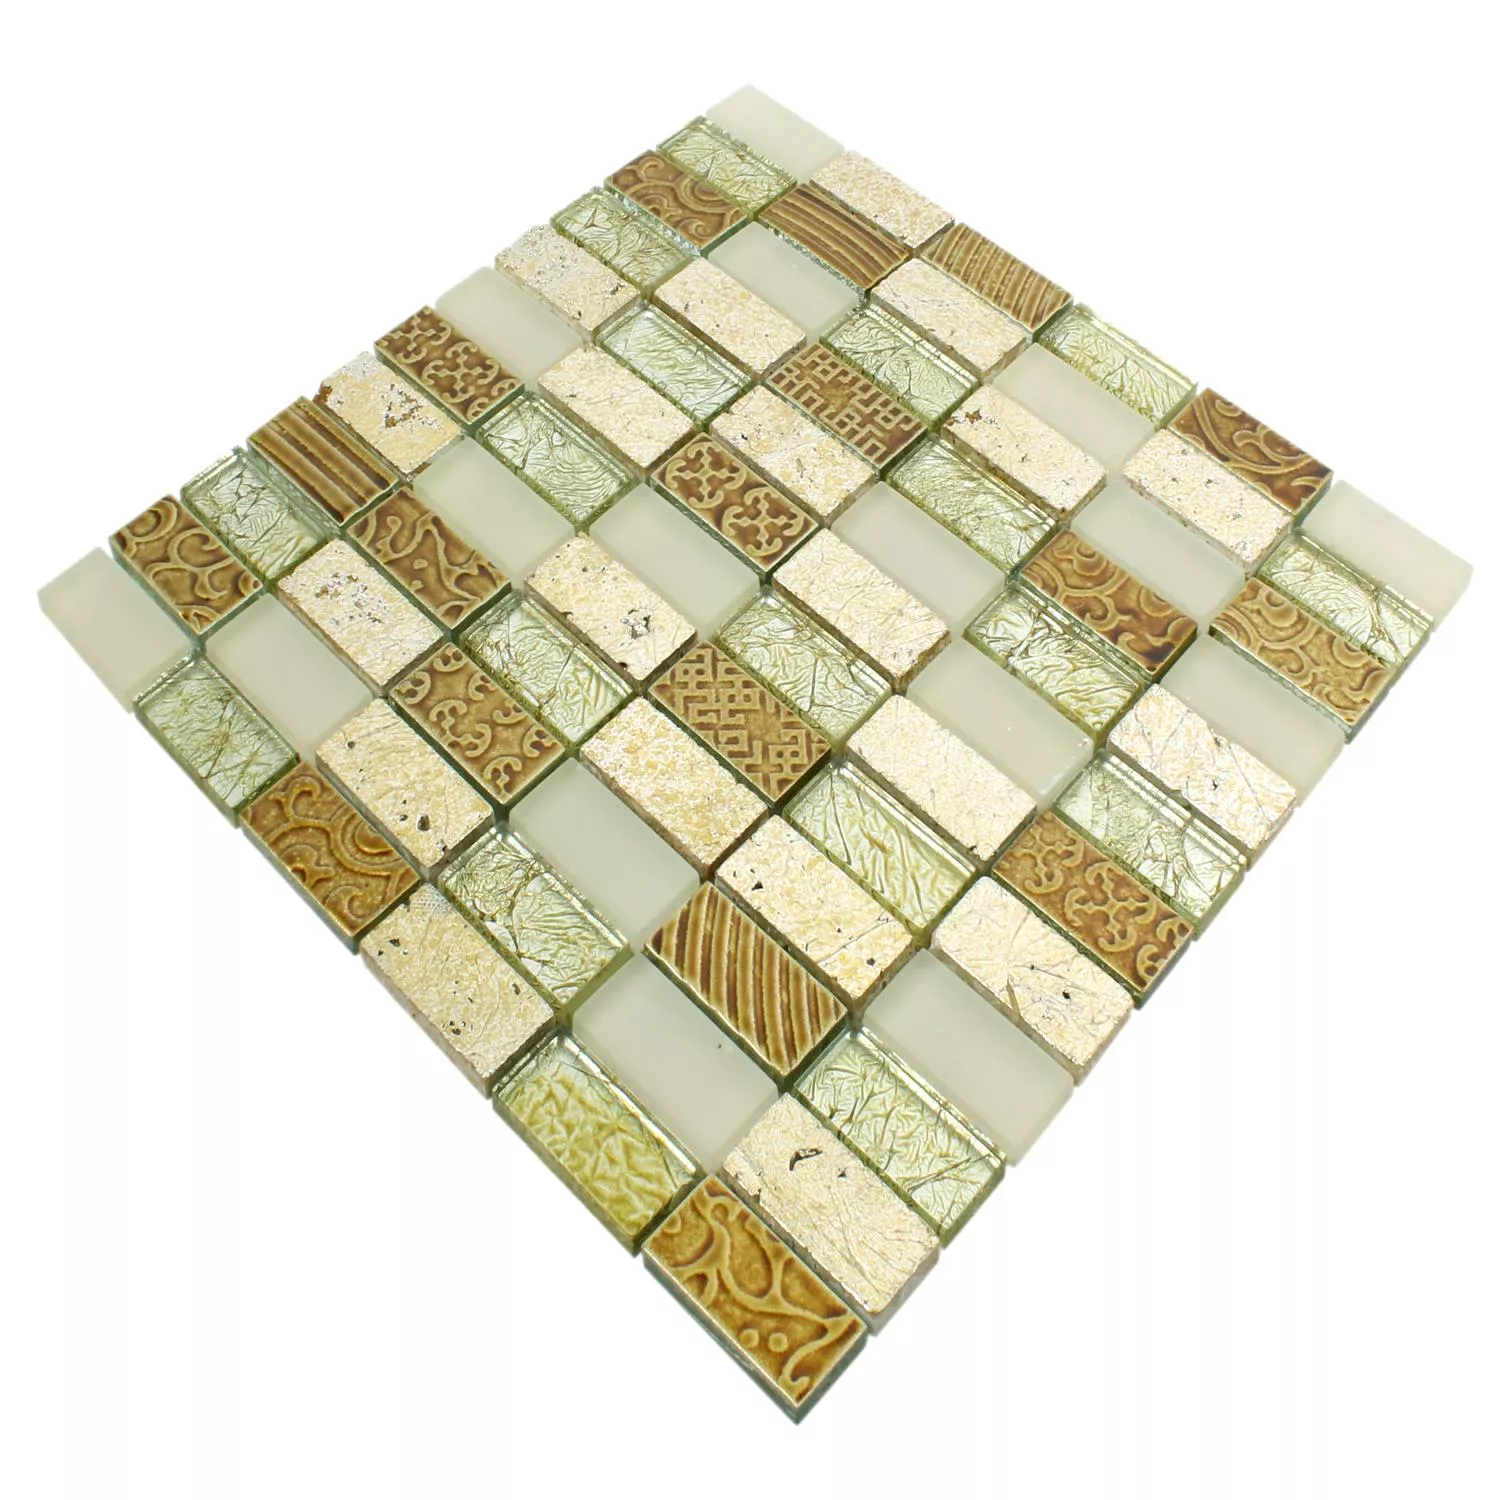 Mosaikfliesen Glas Naturstein Piroshka Gold